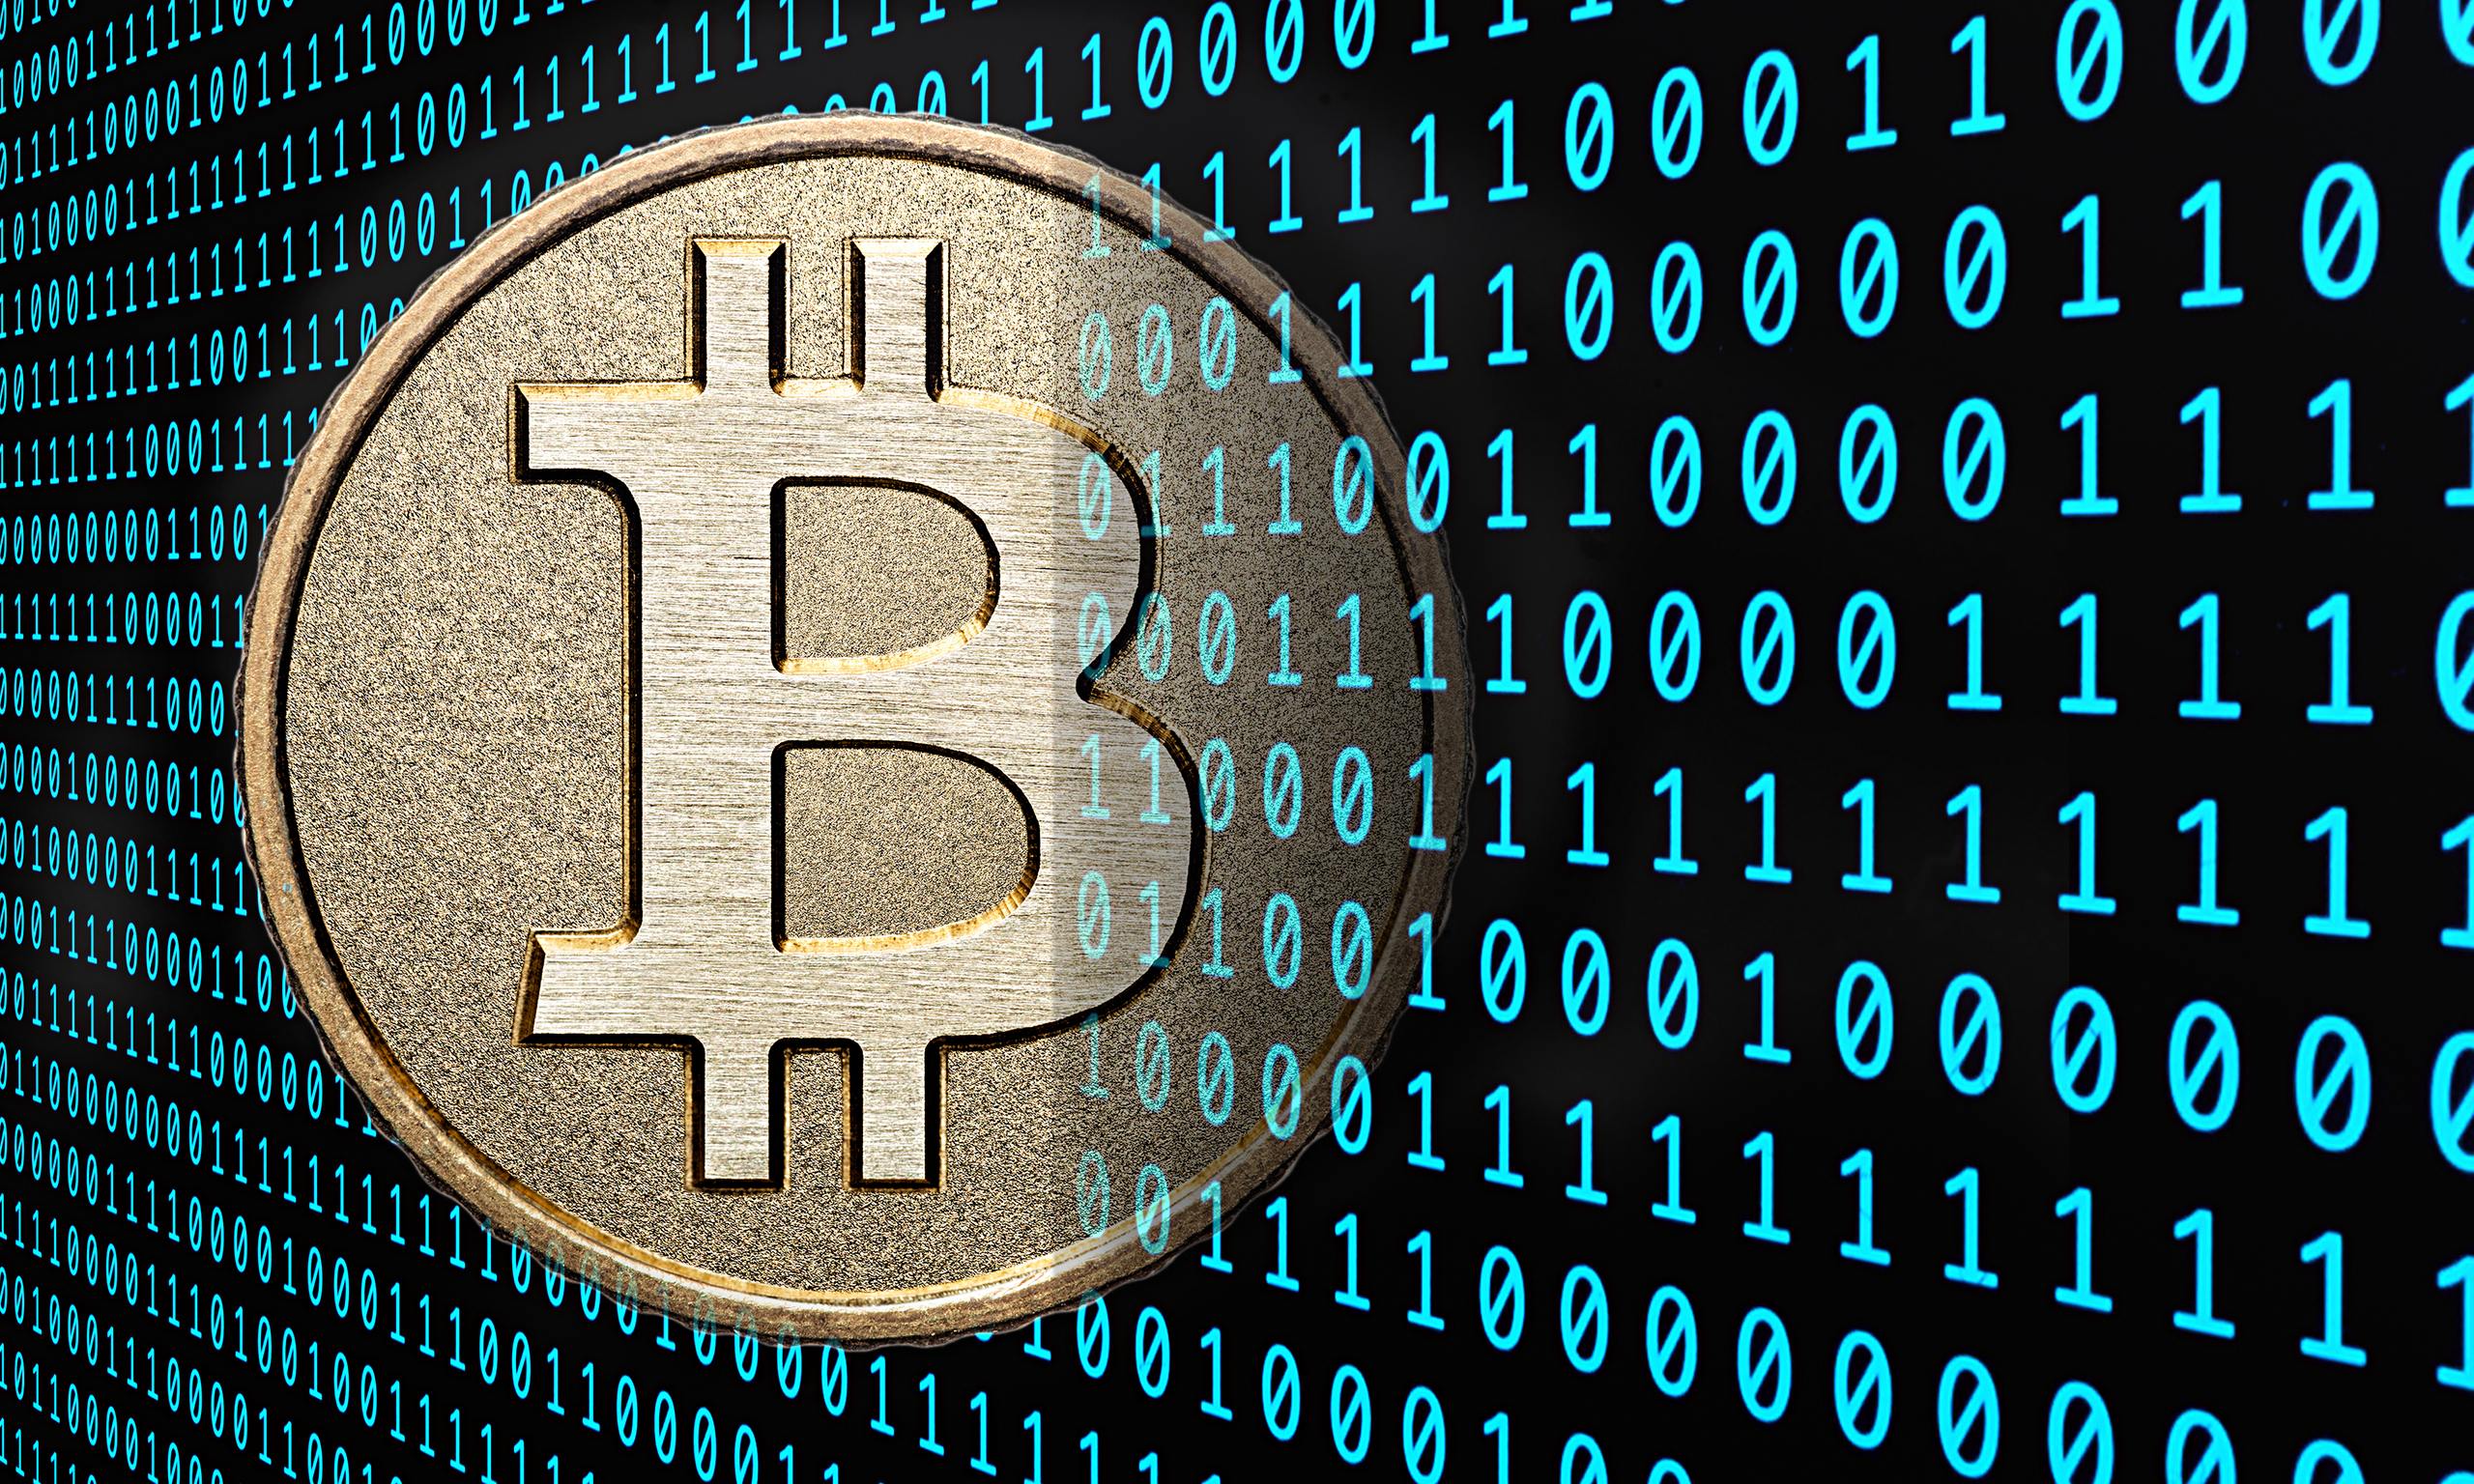 Come fare trading con i bitcoin? Guida alla scelta del broker